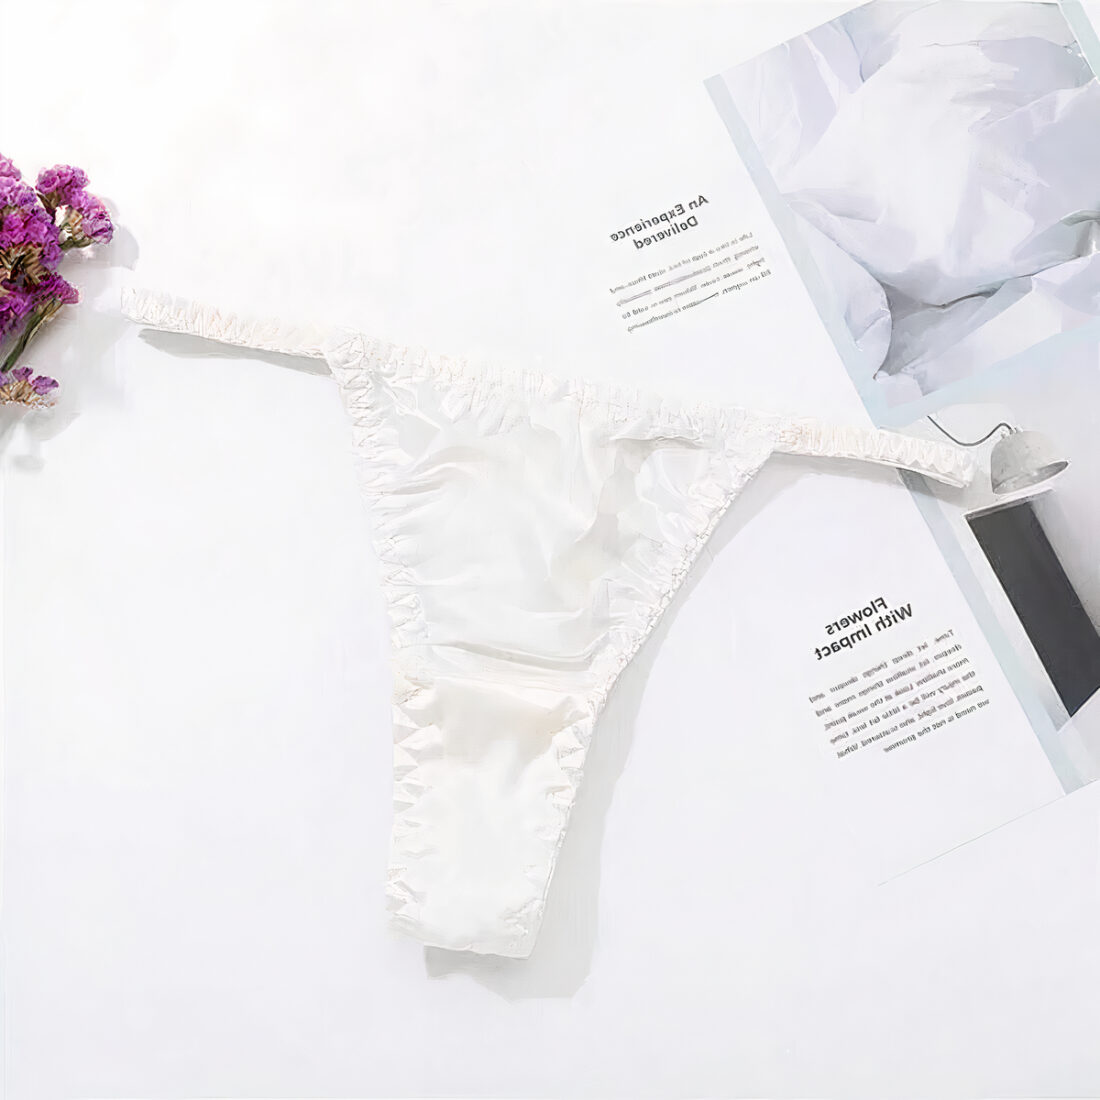 string blanc élastique posé sur un fond blanc avec fleur violette en haut à gauche et page de catalogue à droite.